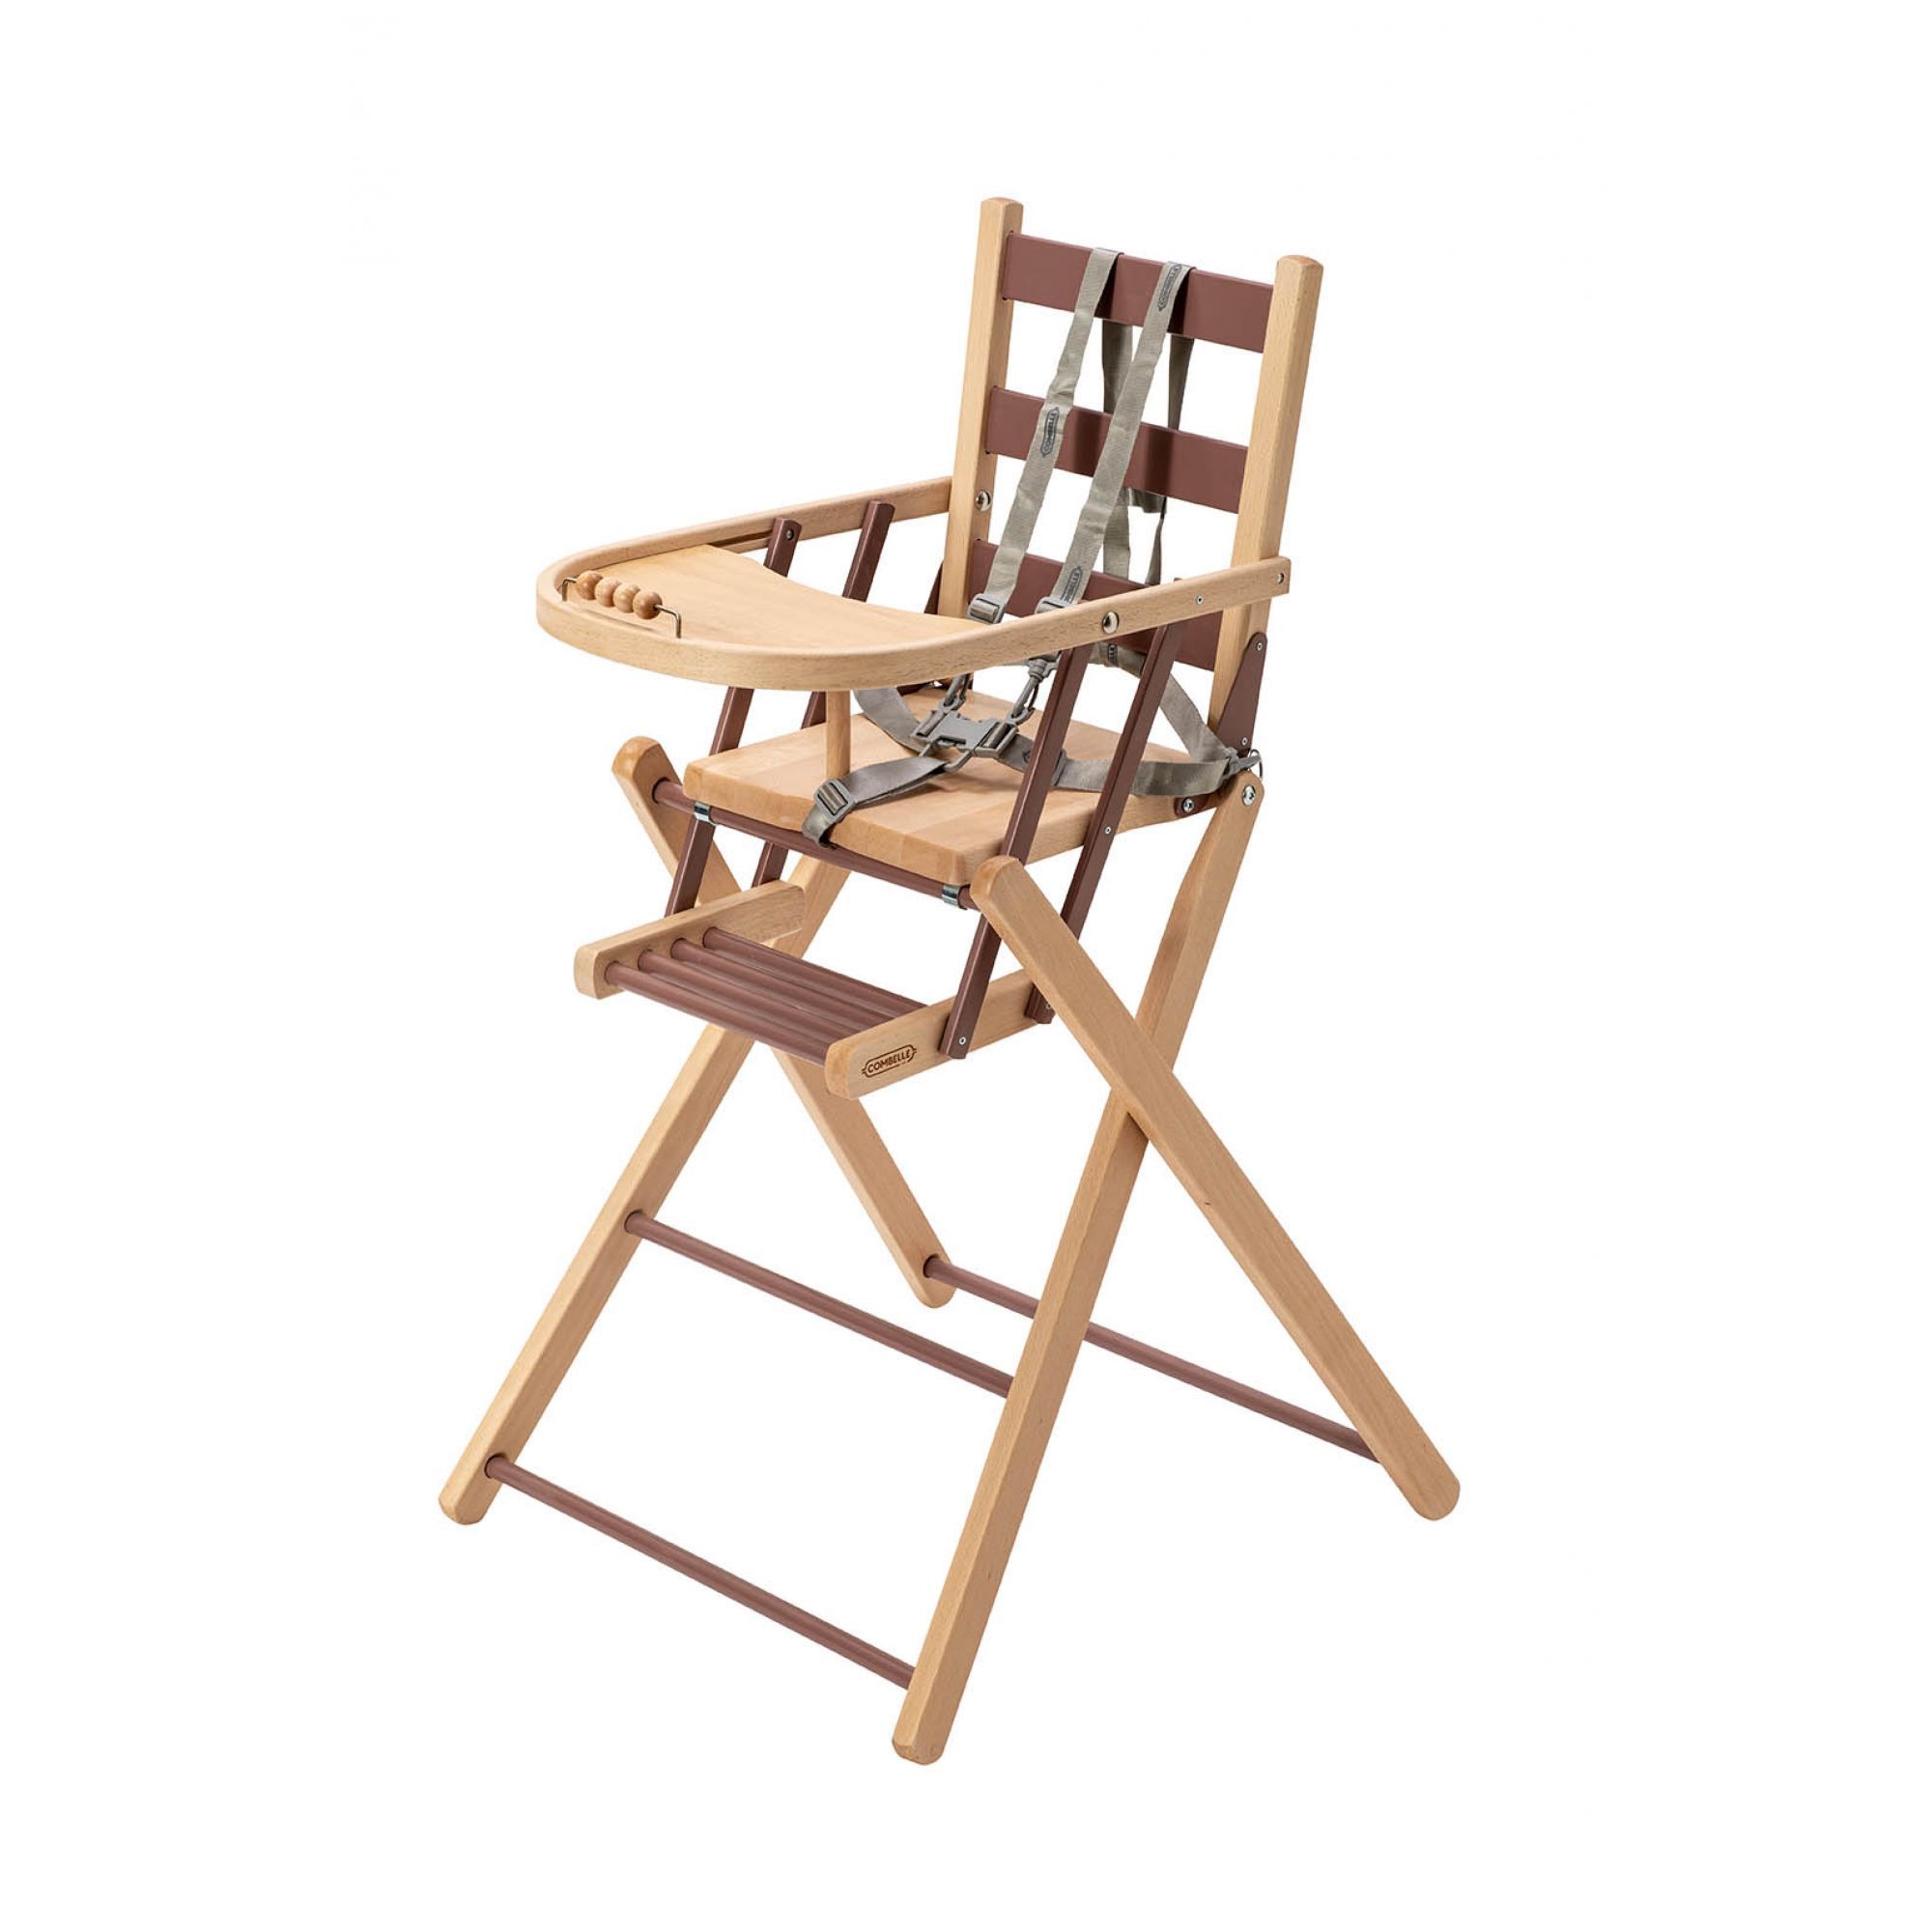 Chaise haute pliante bois naturel - Made in Bébé